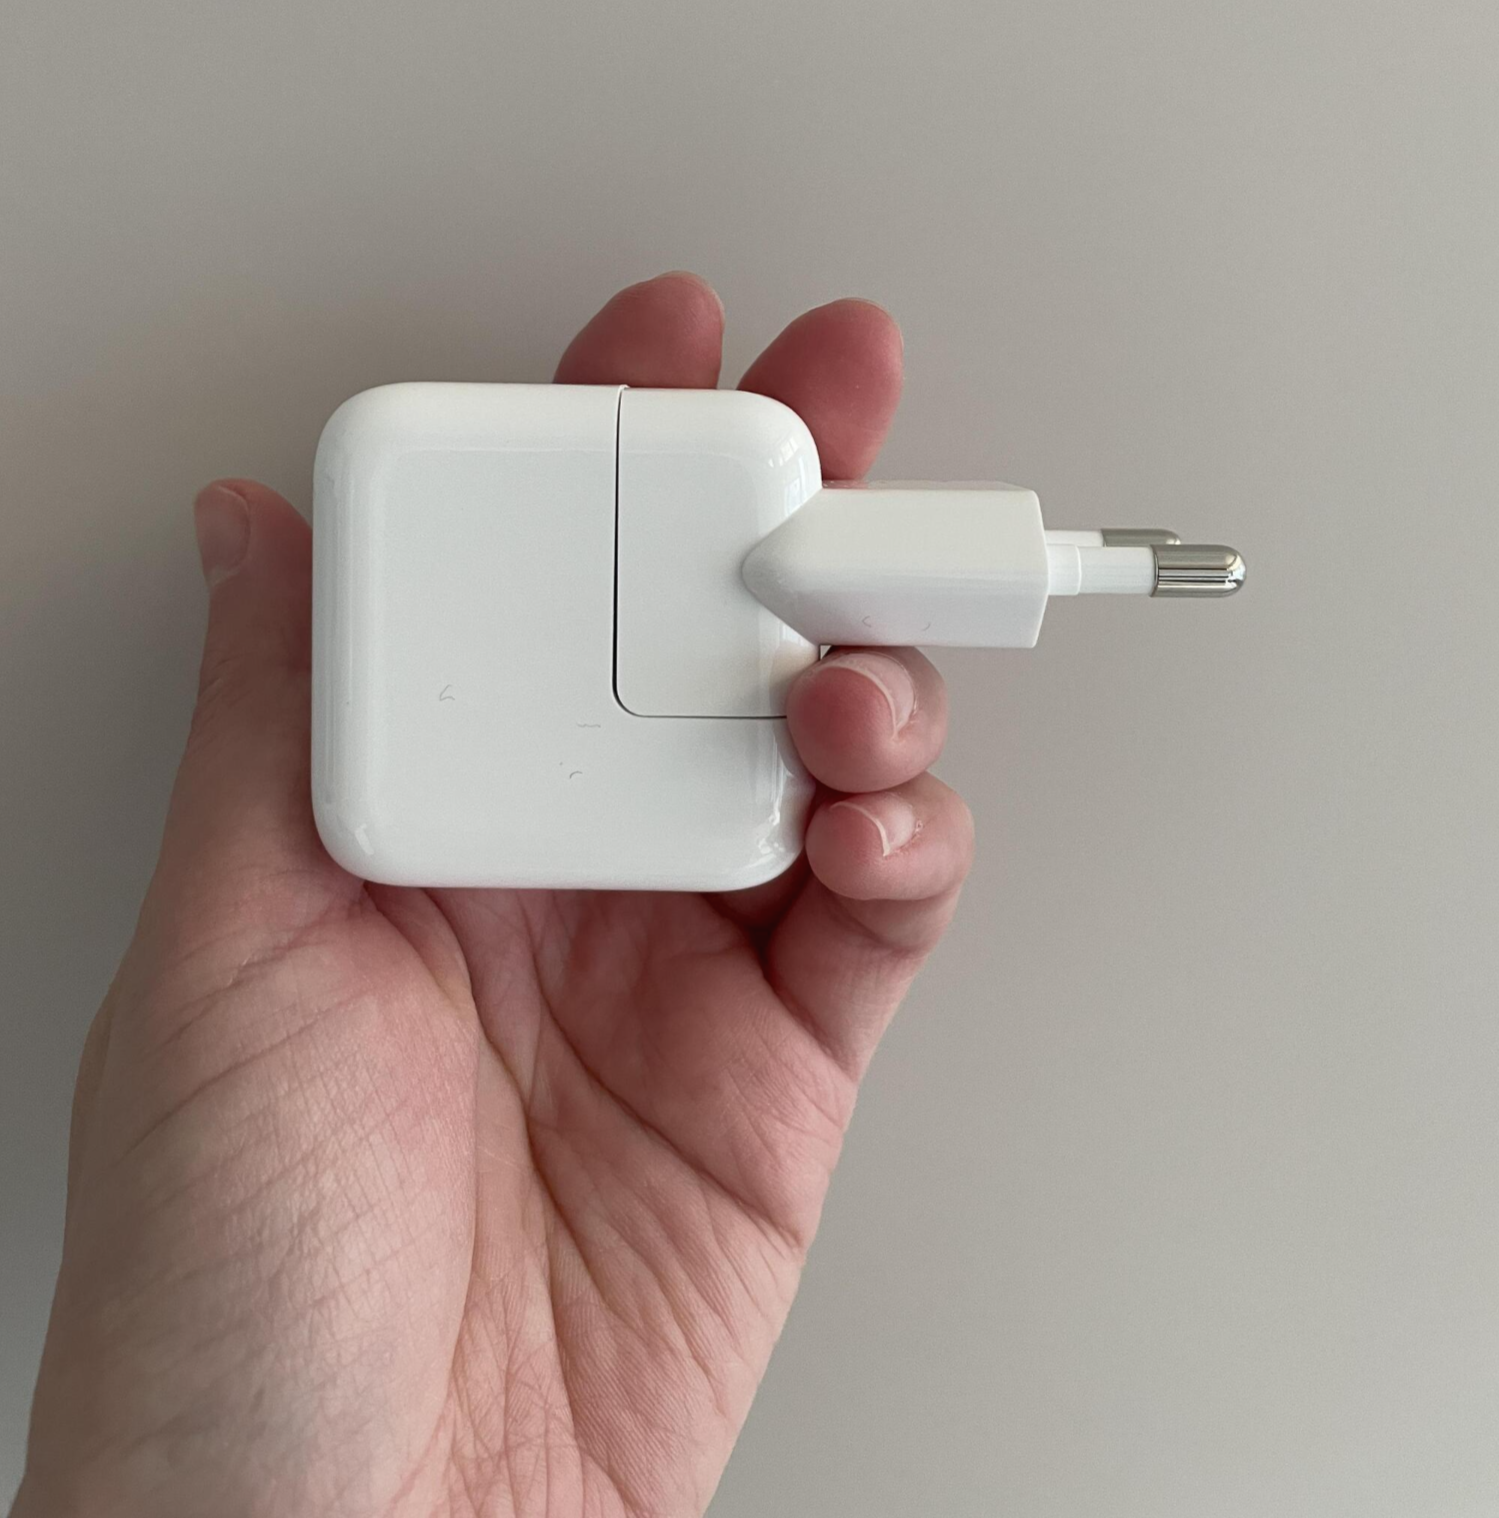 애플 충전기 12W 어댑터 연결된 상태